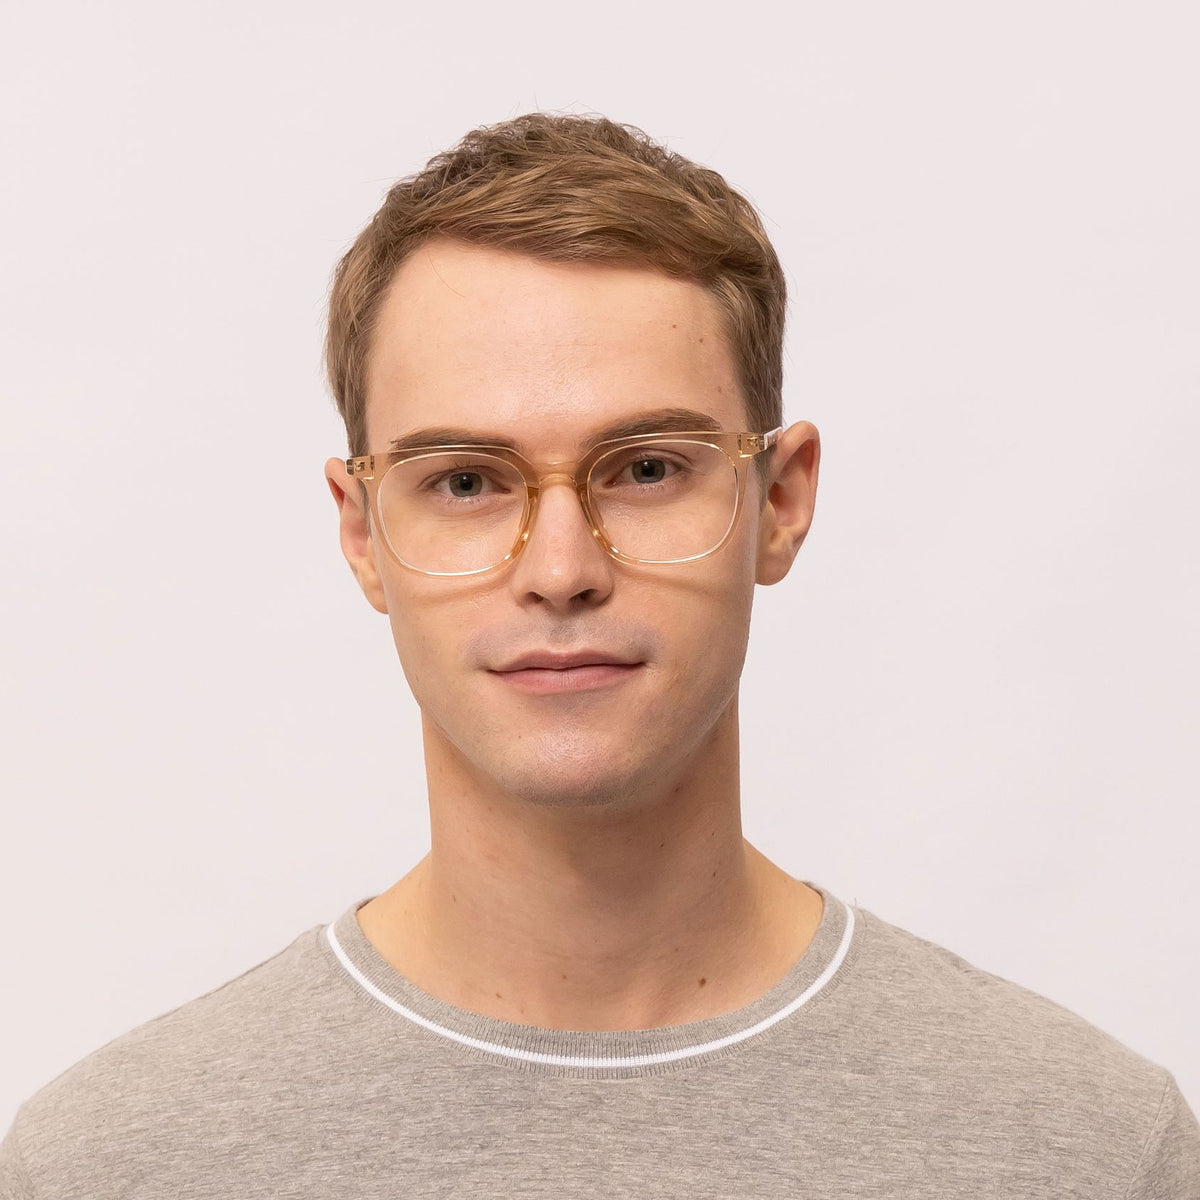 oscar square transparent brown eyeglasses frames for men front view